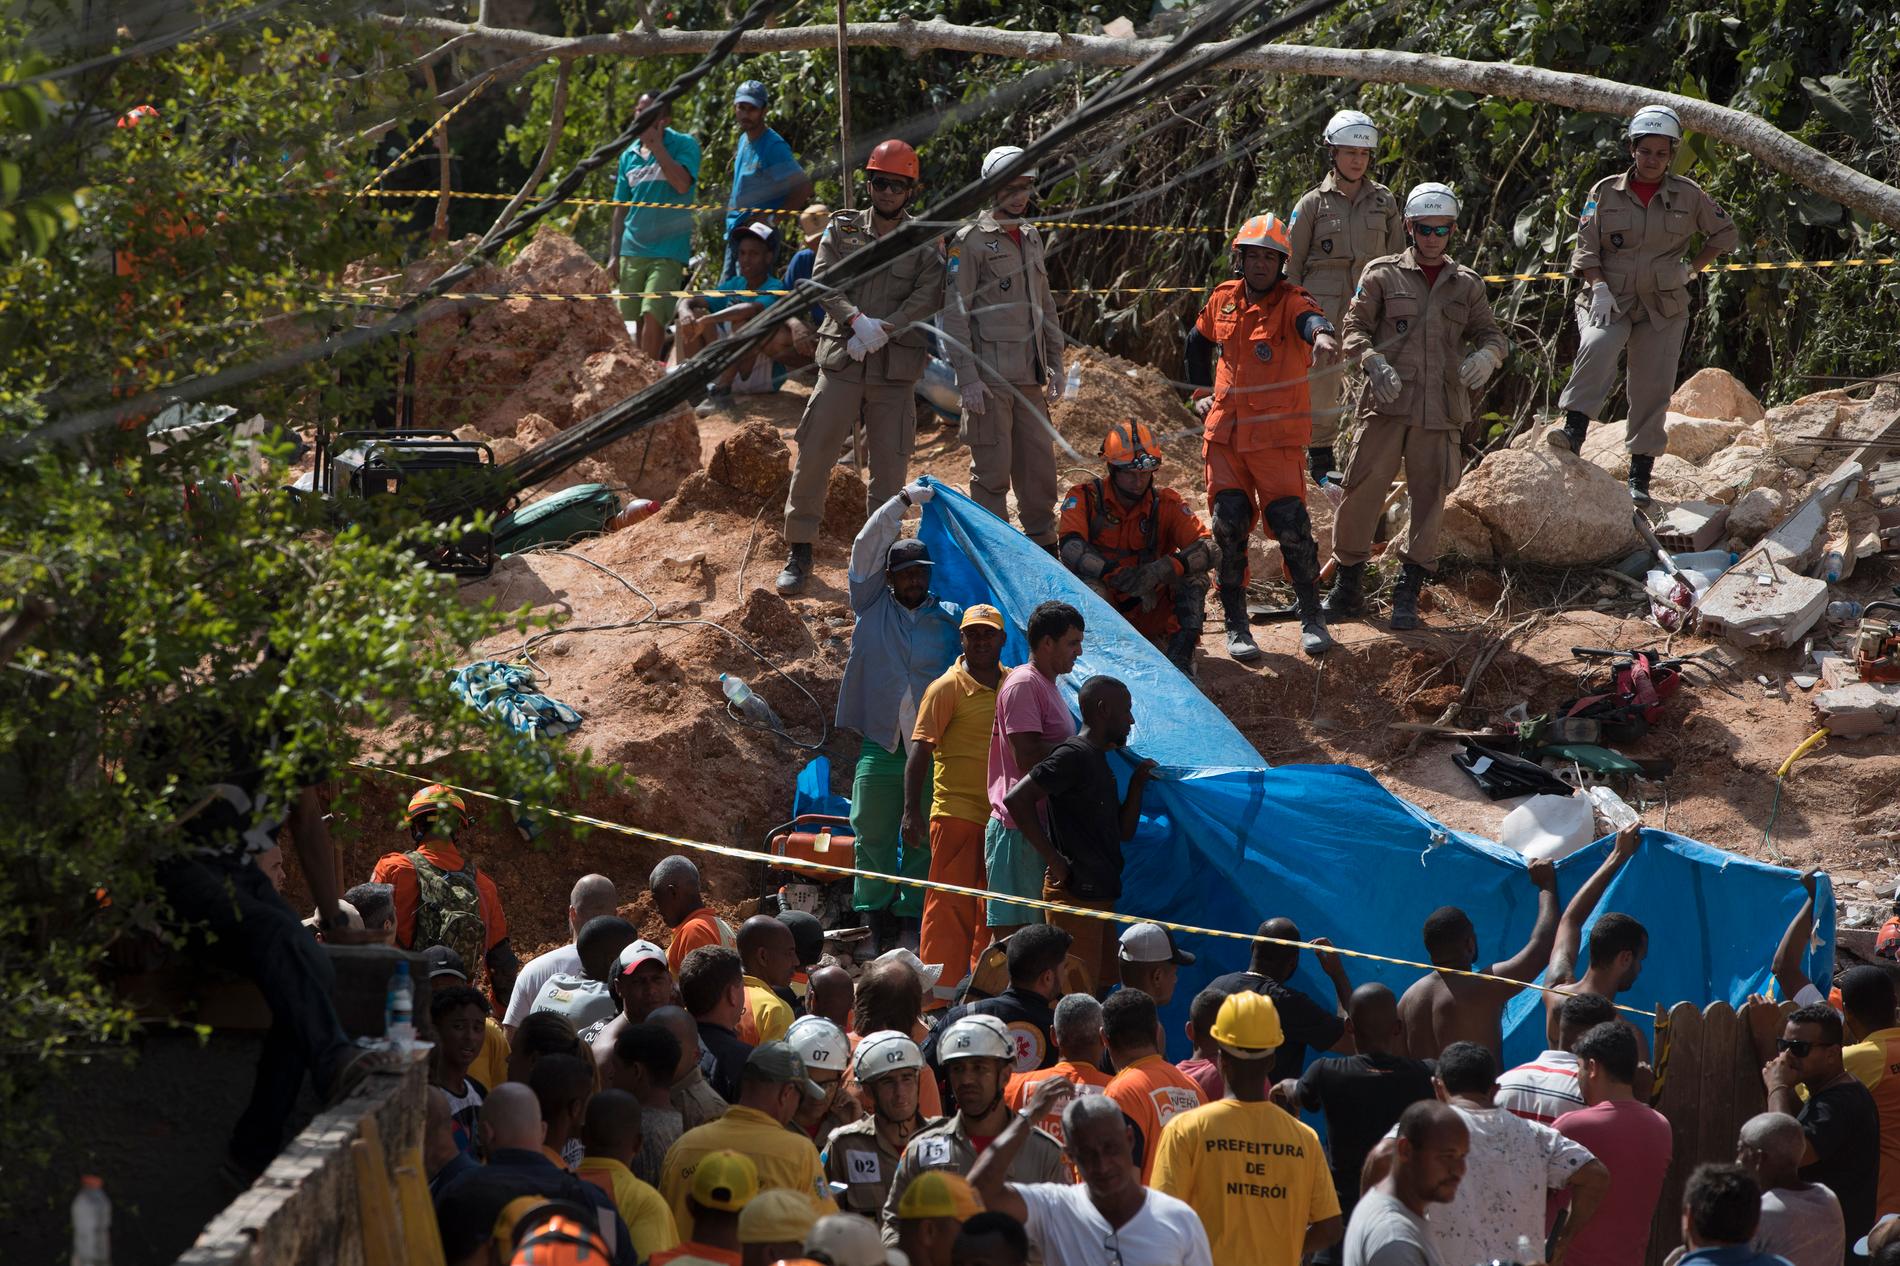 Boende, frivilliga och räddningspersonal letar efter försvunna i den brasilianska kåkstaden Niteroi som drabbats av ett jordskred.